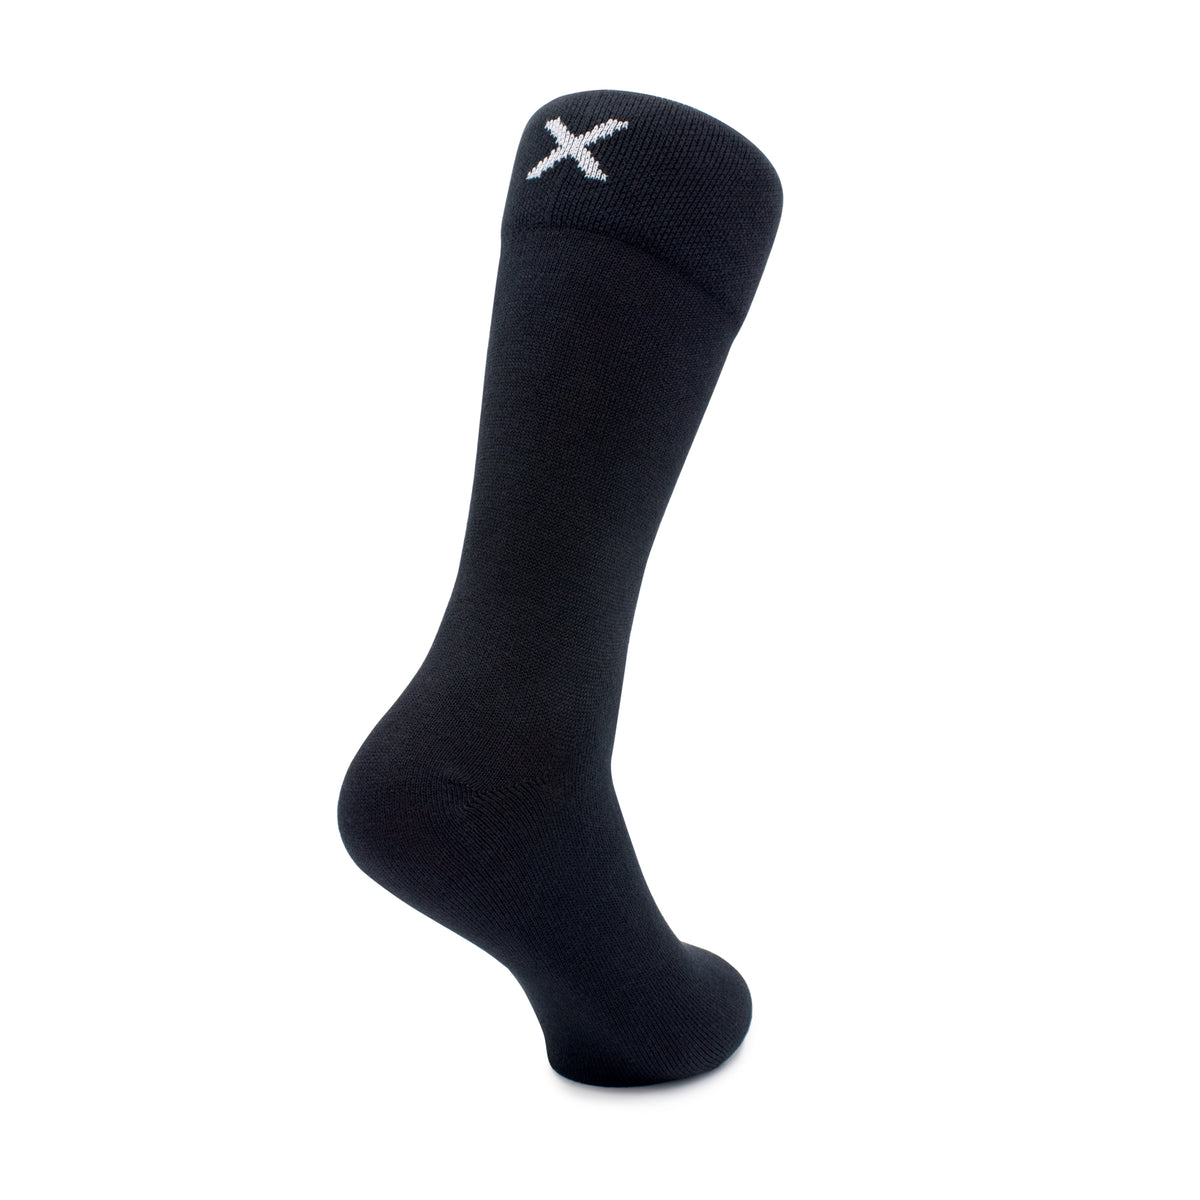 Black Socks - Charix Shoes